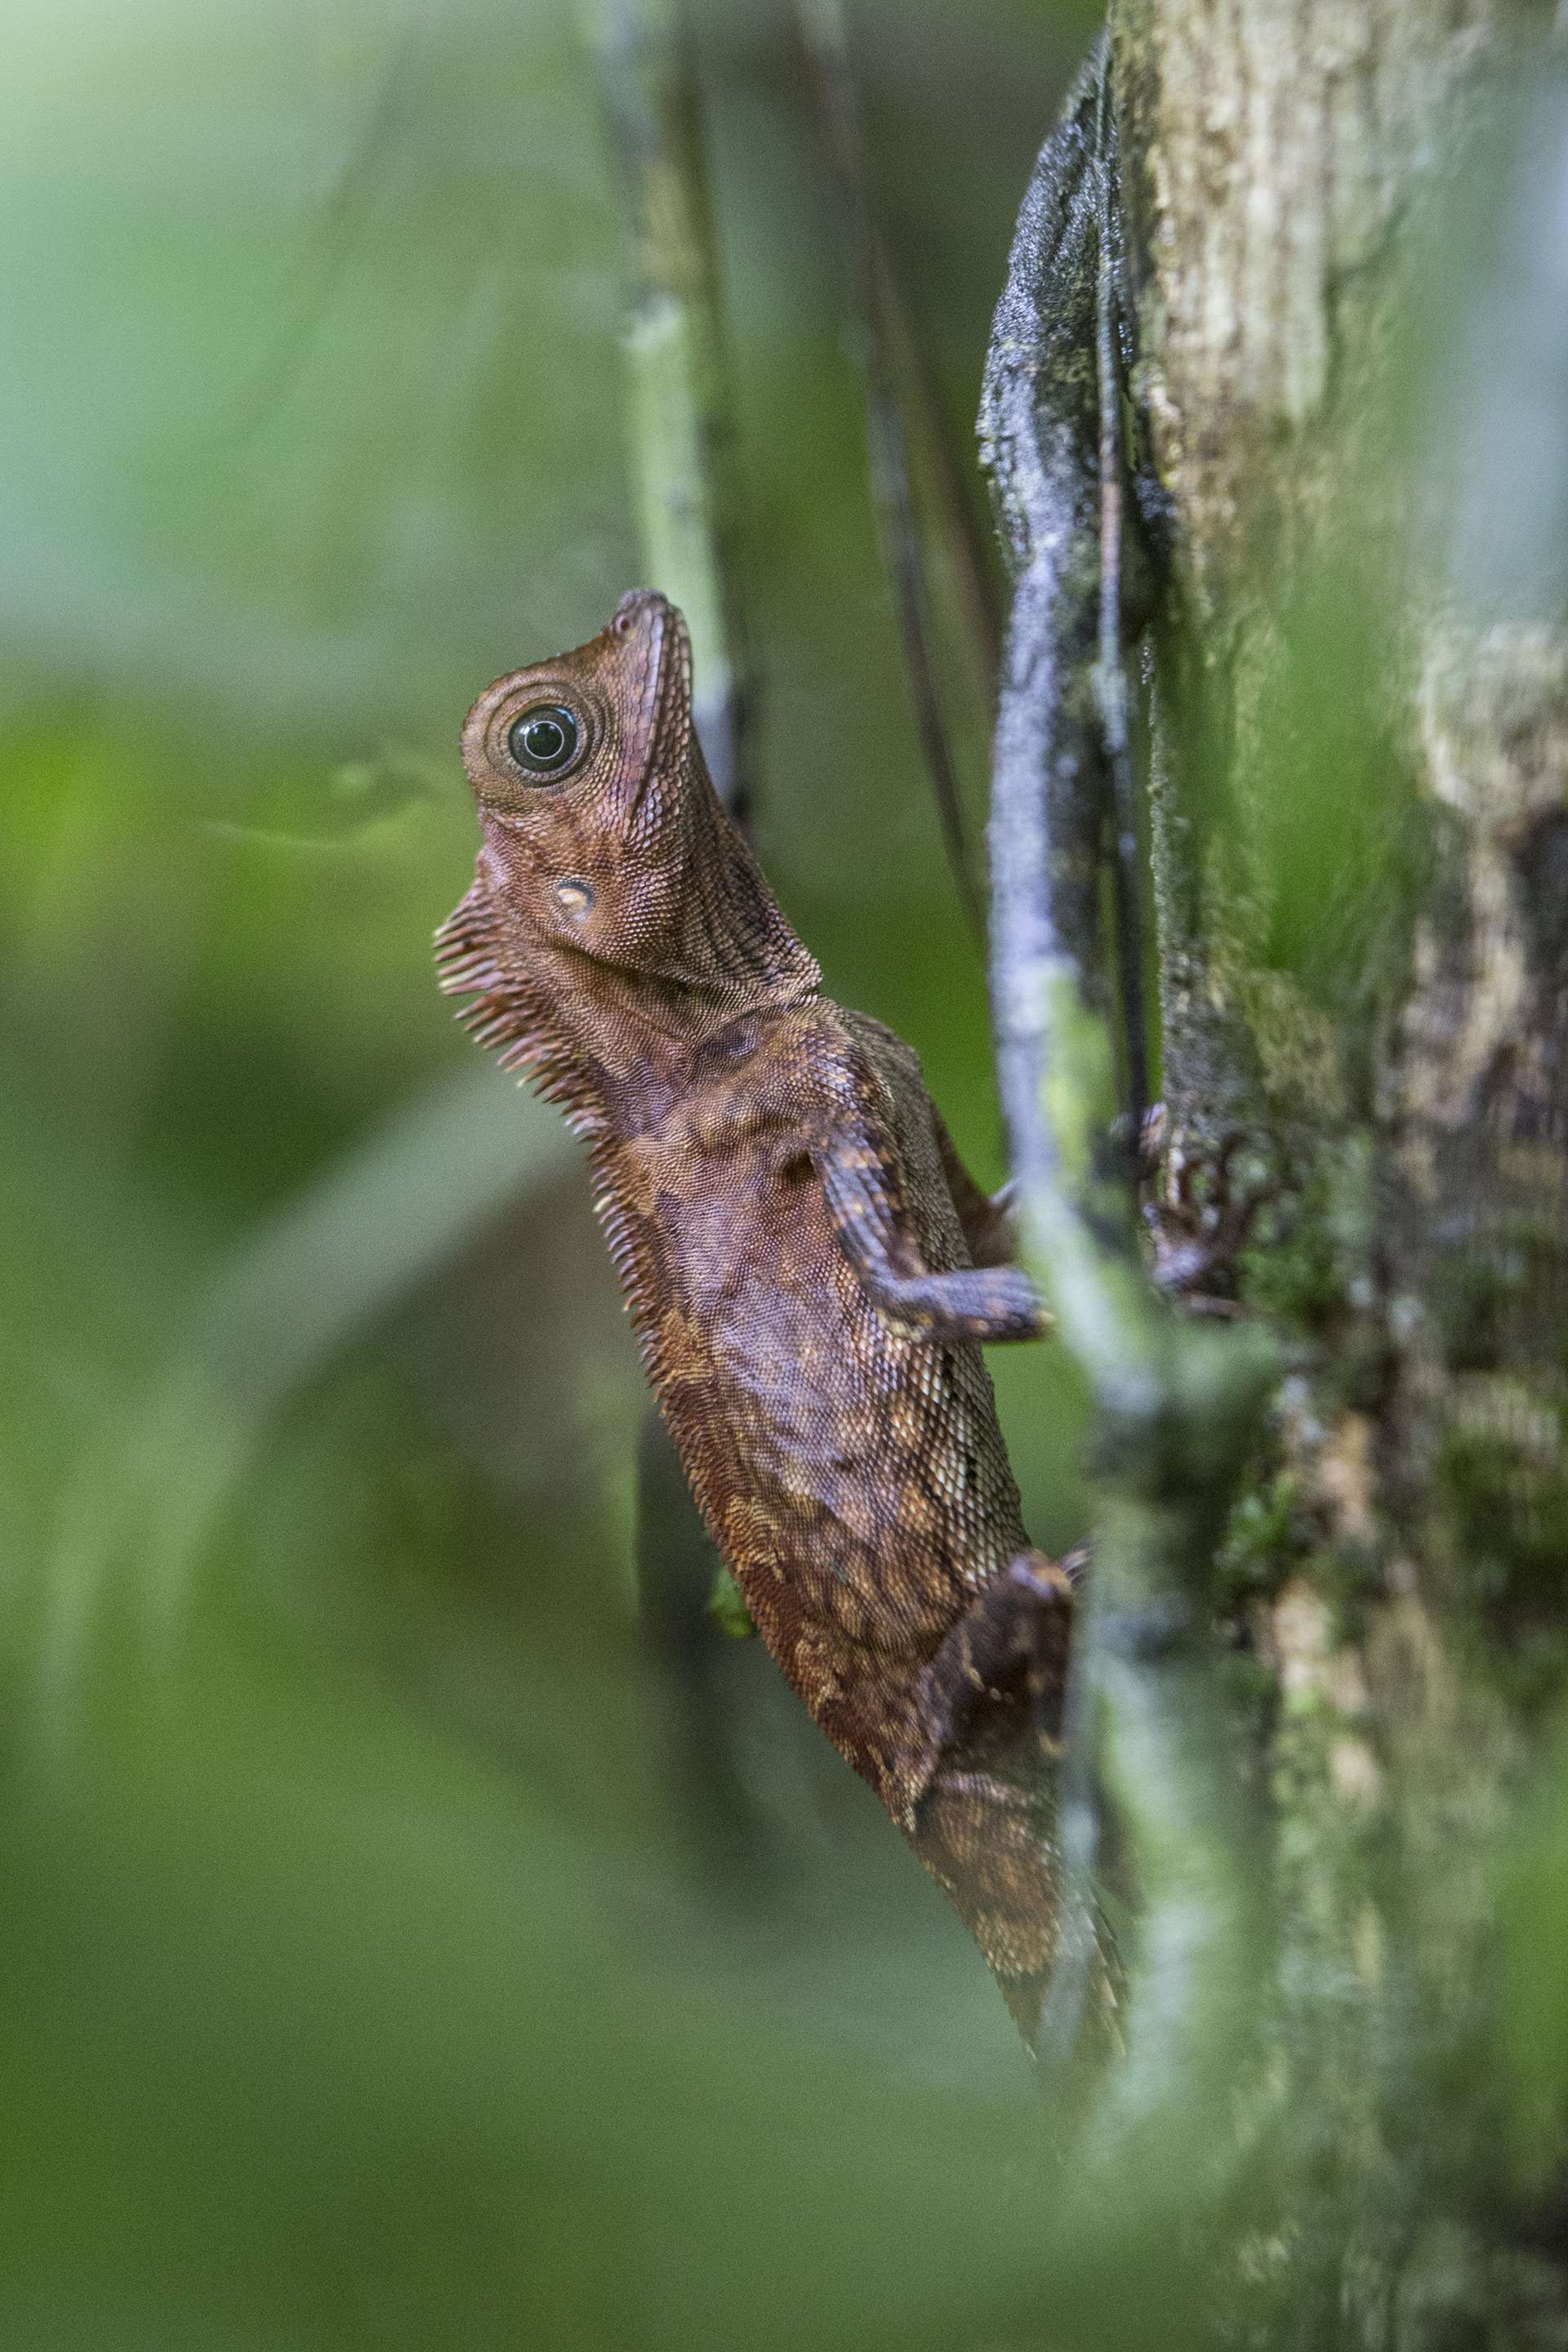 Photographie de Gilles Martin d'un dragon des forêts de Bornéo